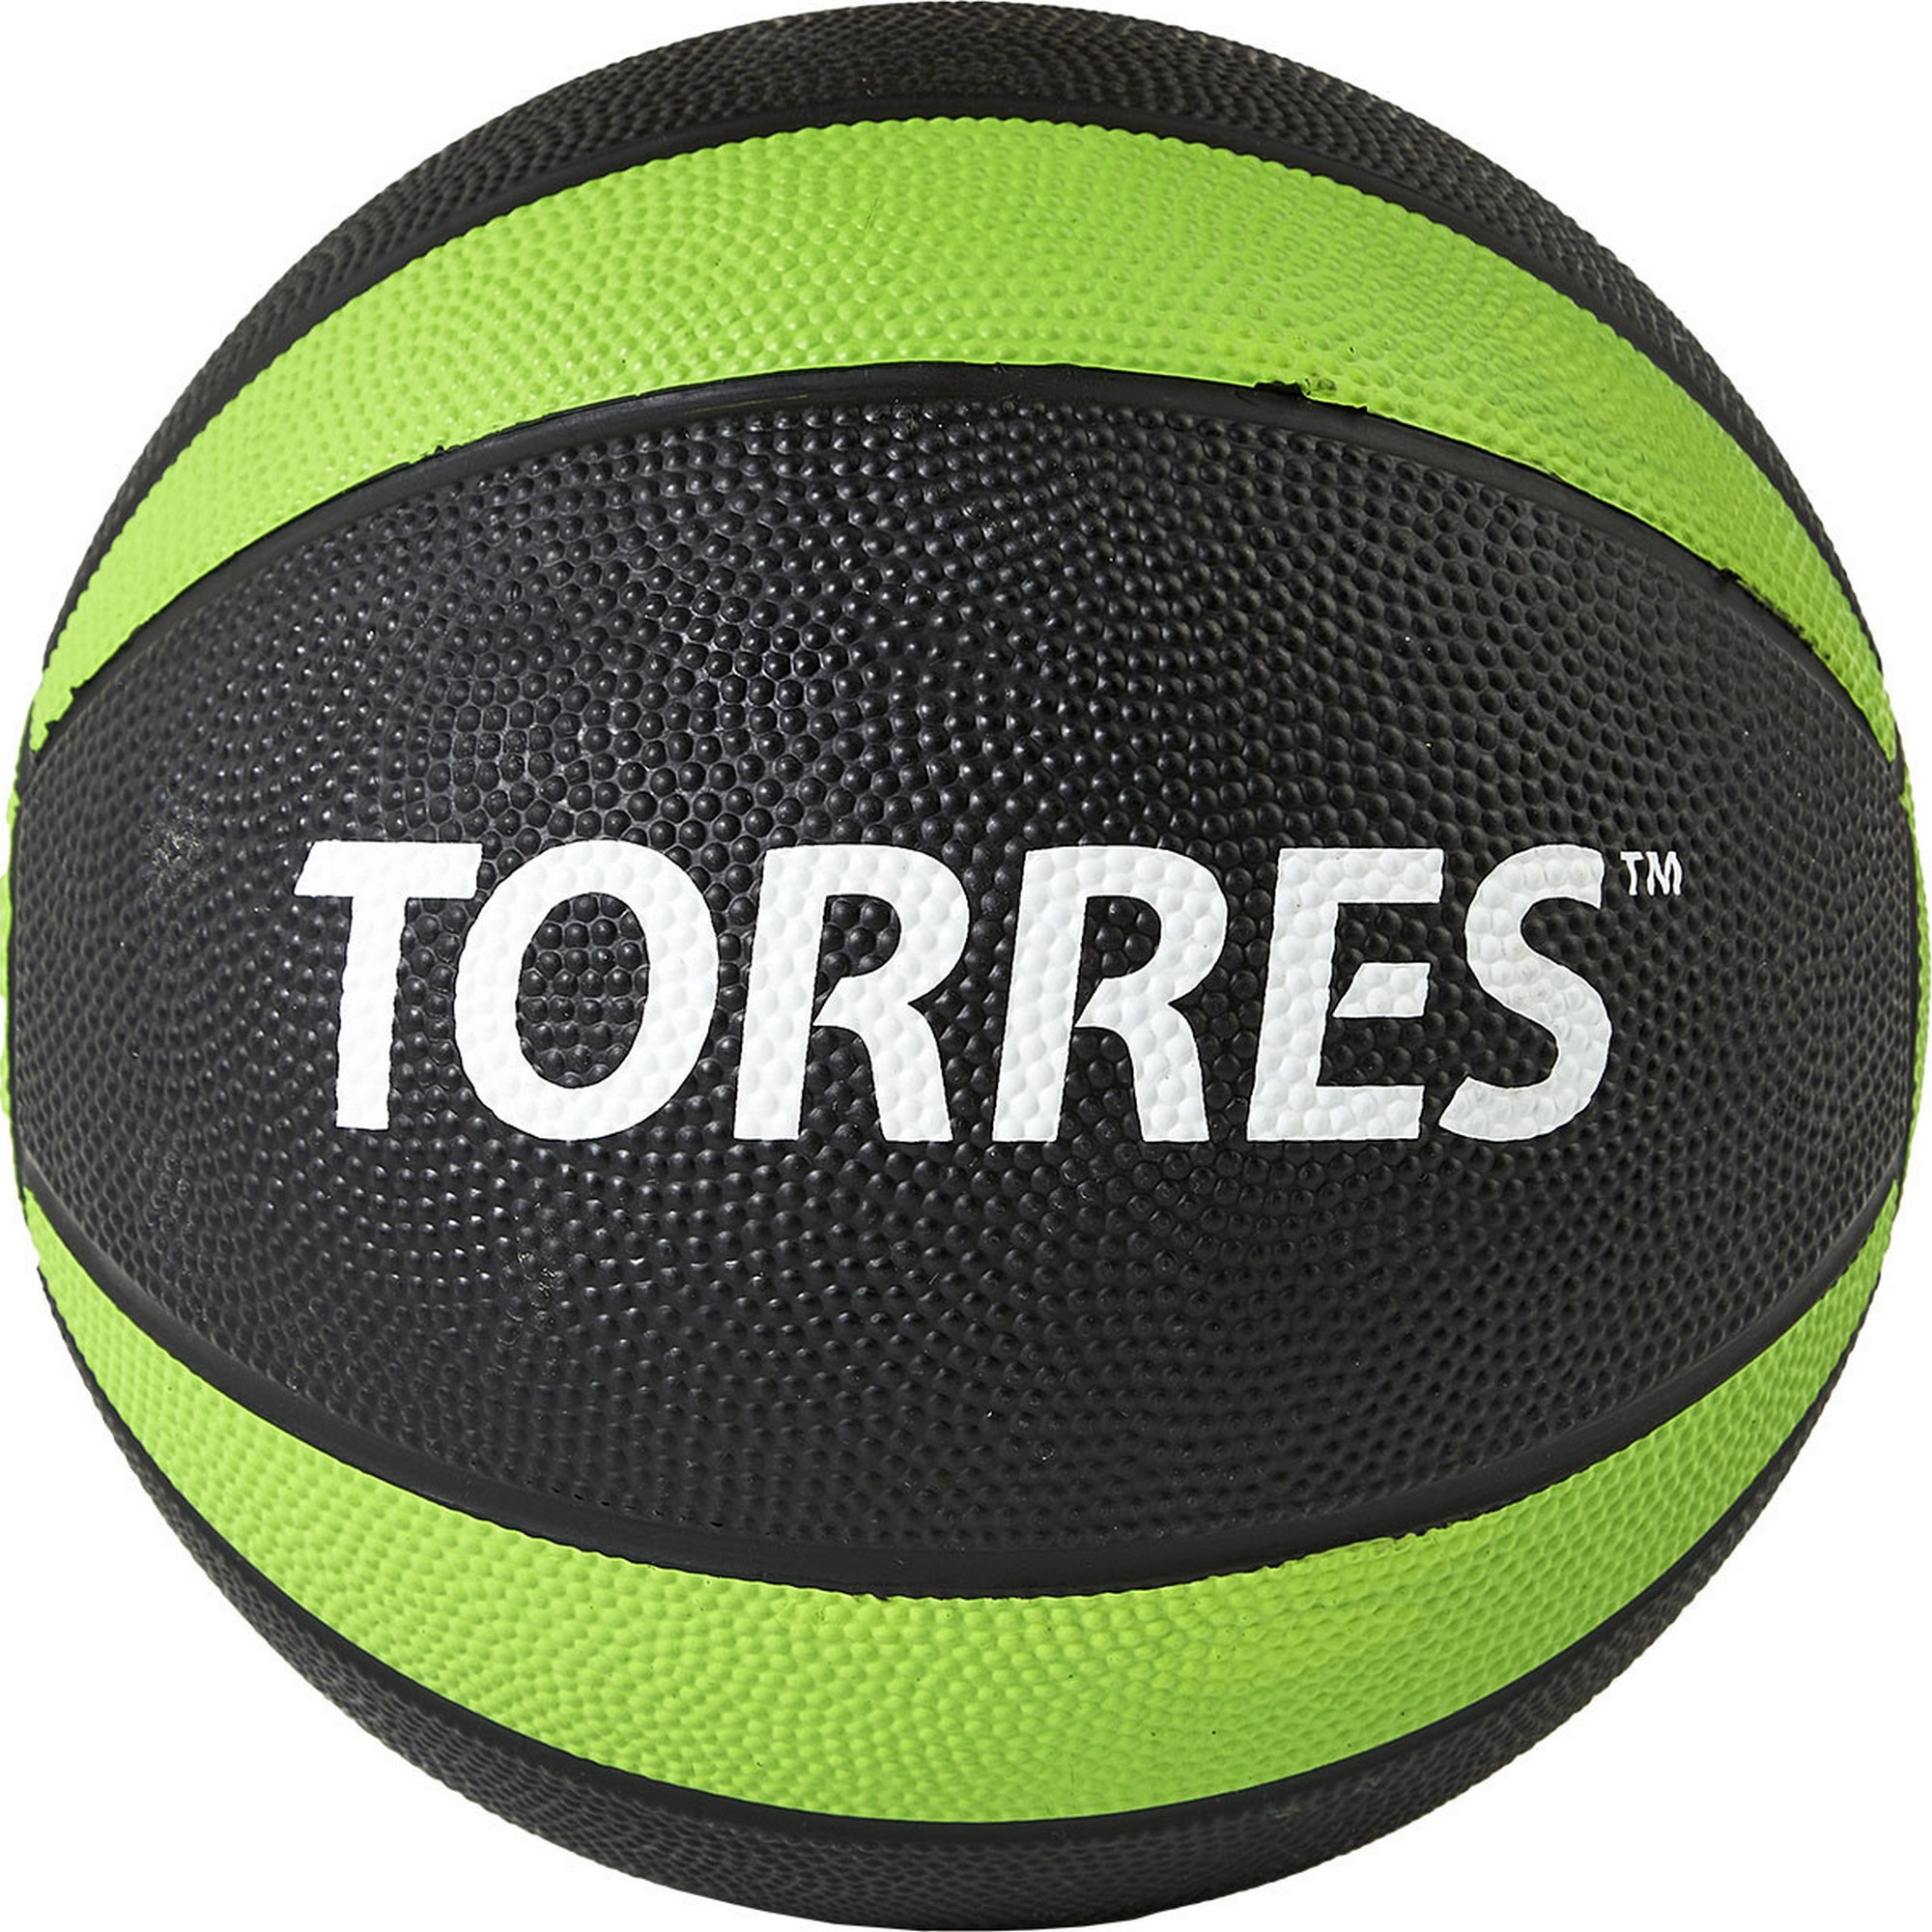  4 Torres AL00224 --